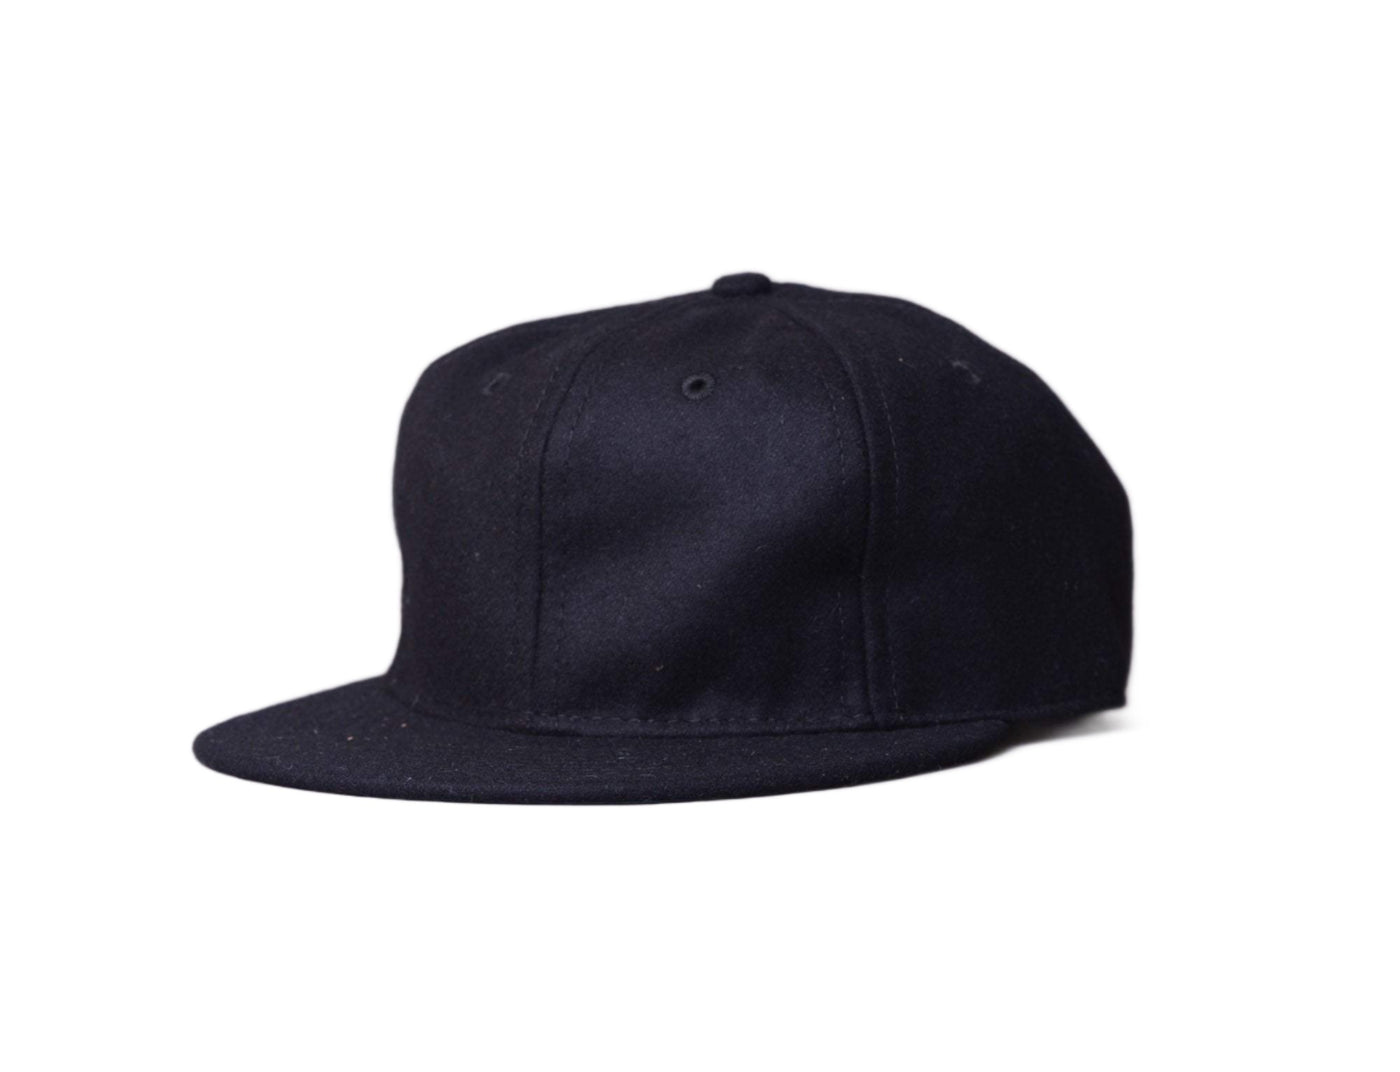 Cap Adjustable Ebbets BallCap - Blank Black Ebbets Field Flannels Adjustable Cap Cap / Black / One Size